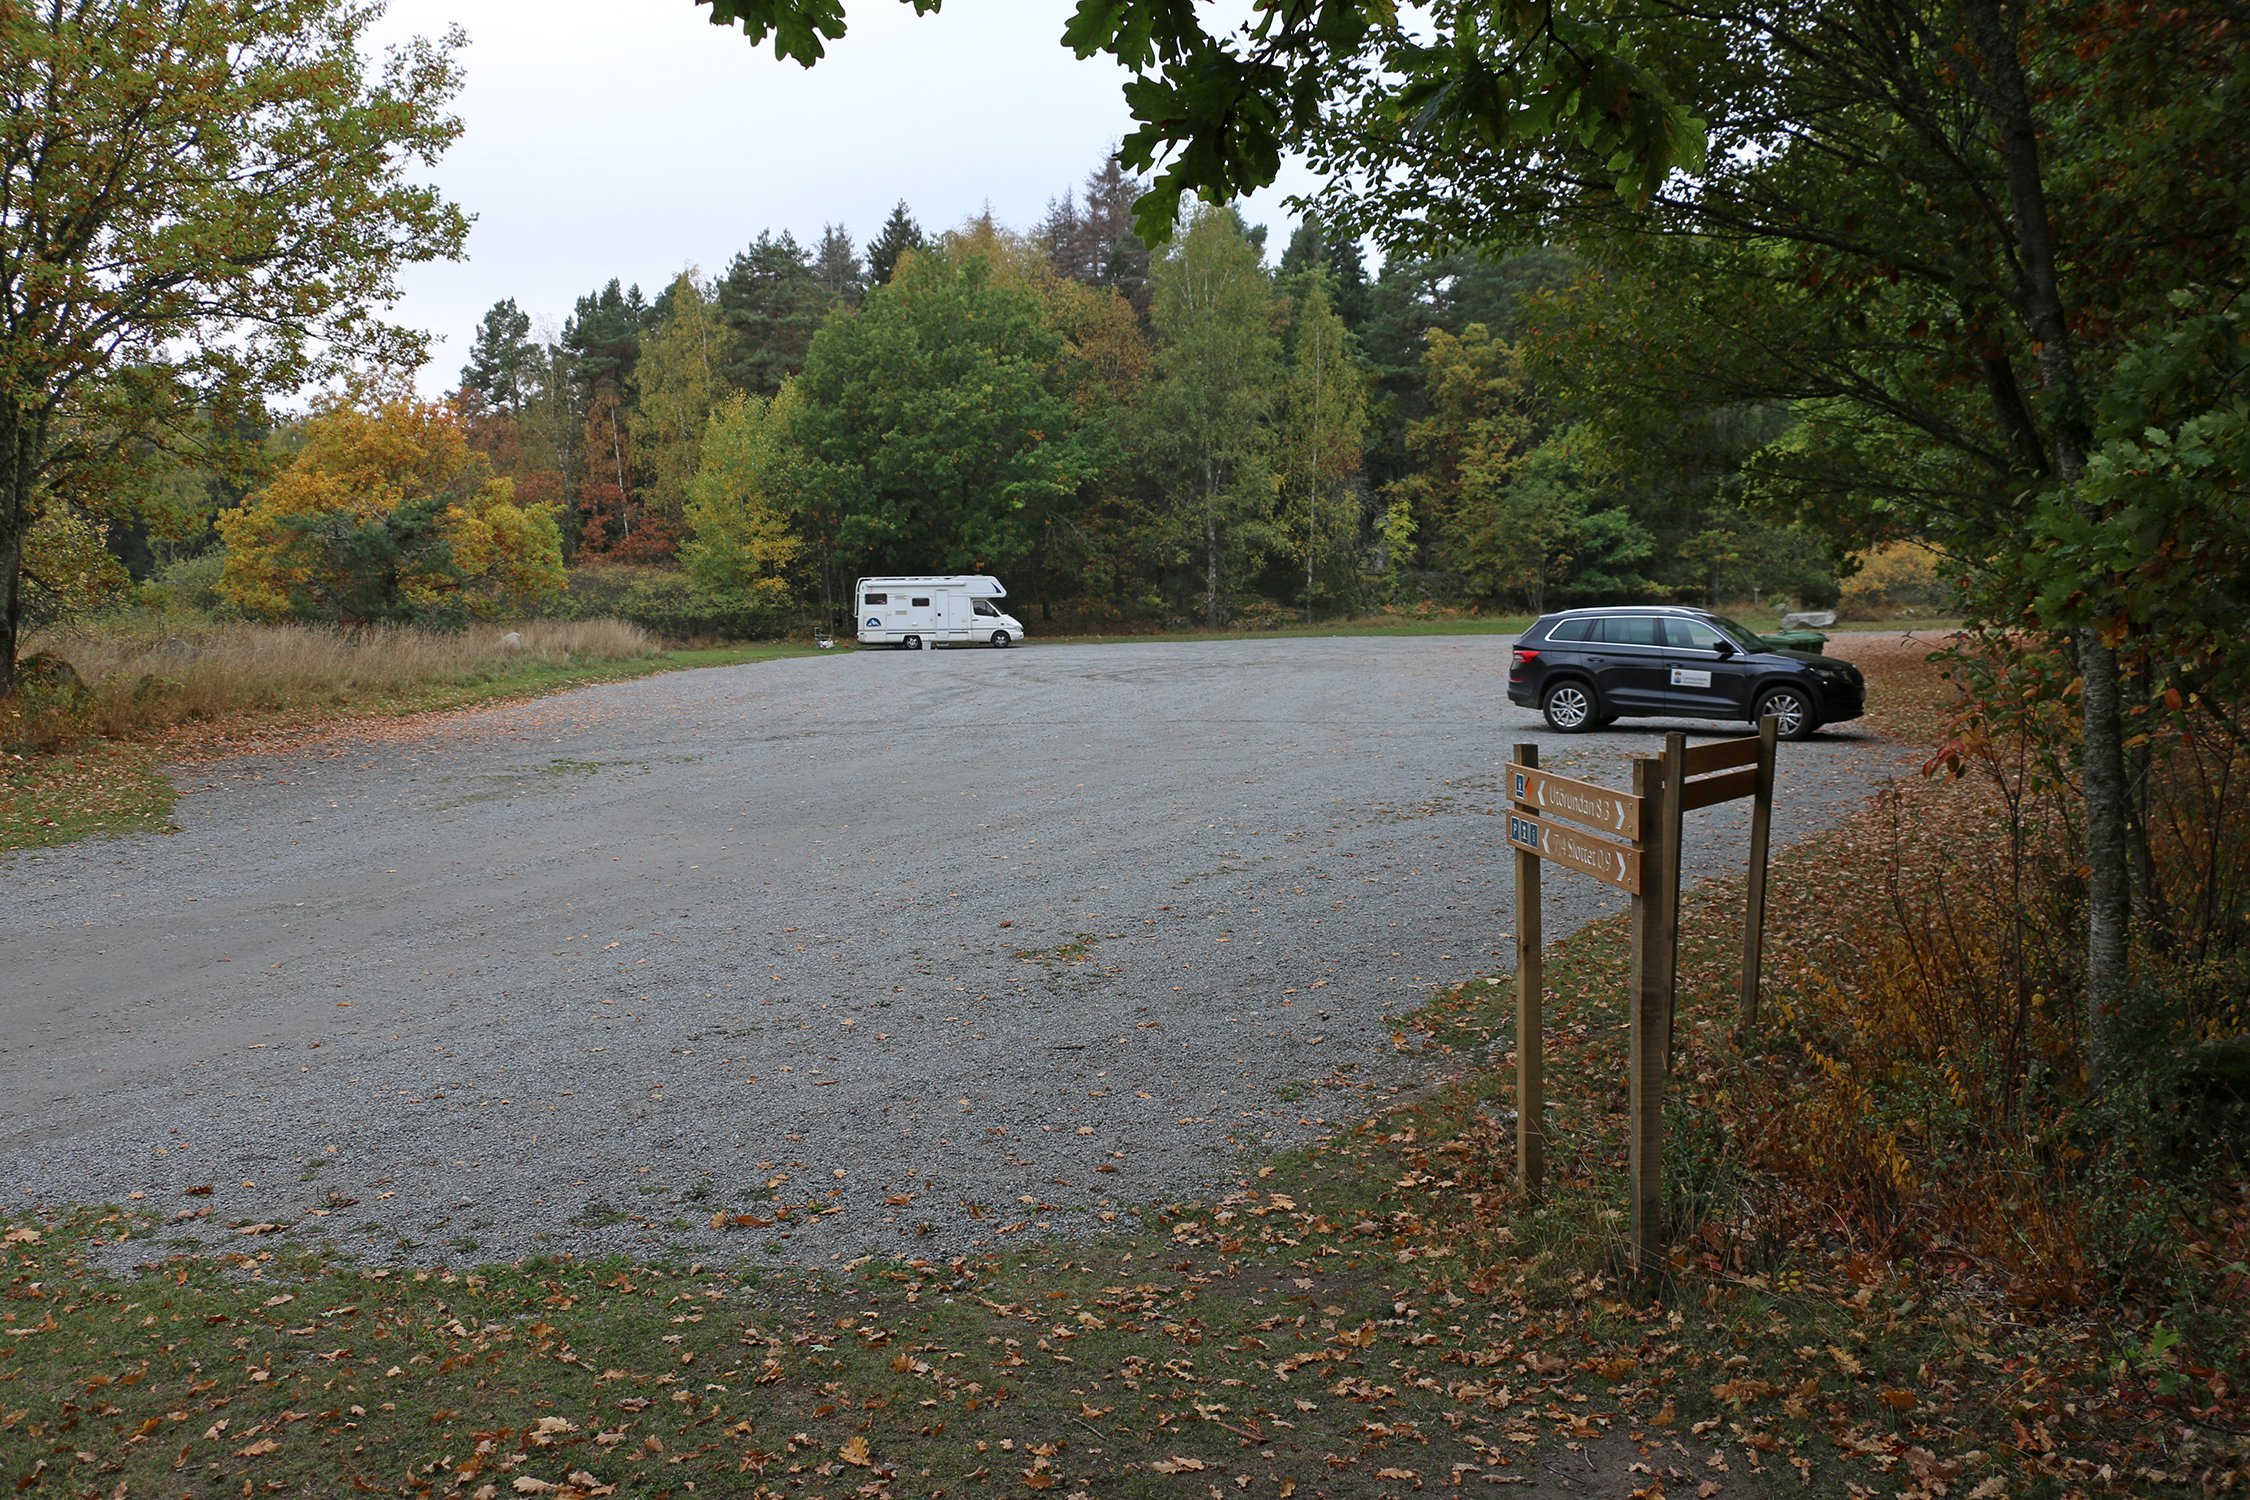 En husbil och en svart suv står parkerade en bit ifrån varandra på en fotbollsplansstor grusad yta.